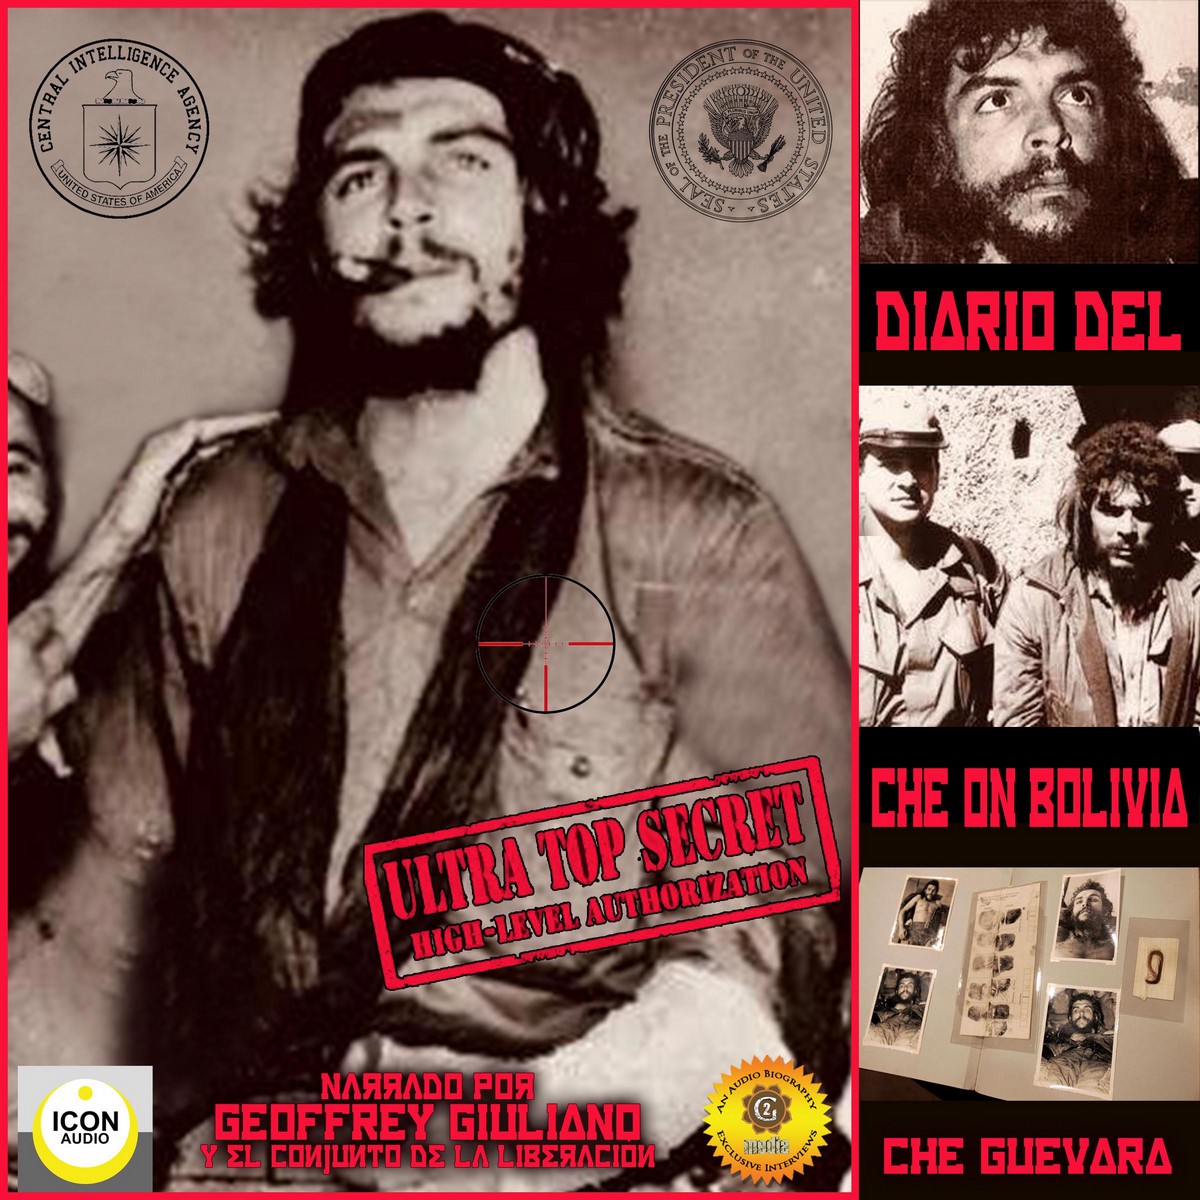 Diario Del Che On Bolivia